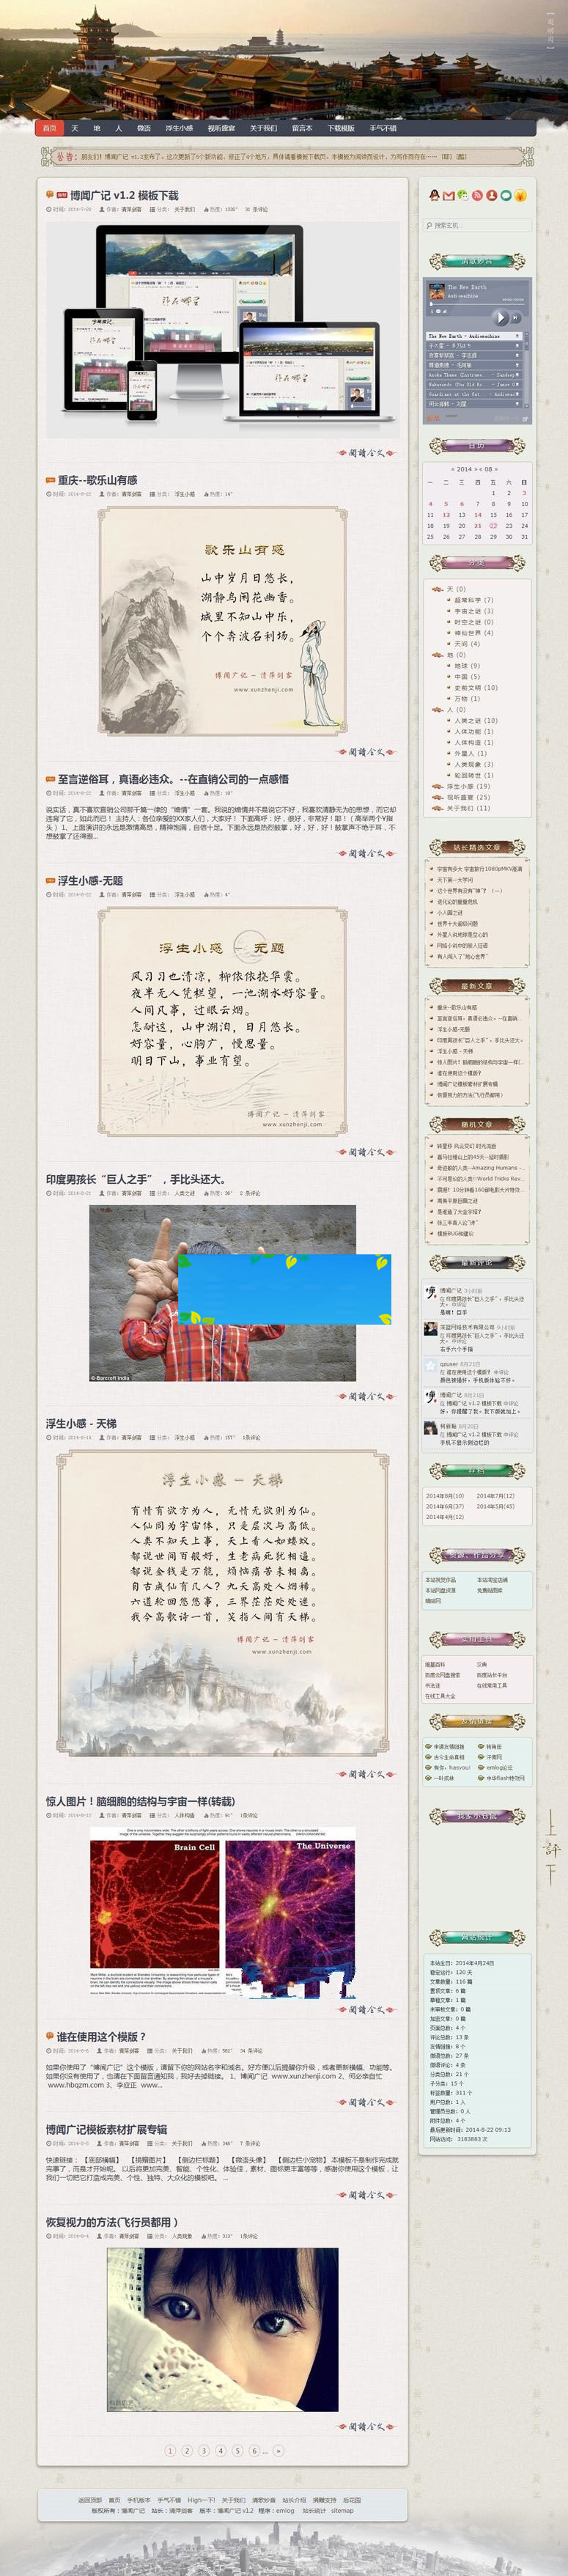 古典中国风大气响应式emlog个人博客主题模板